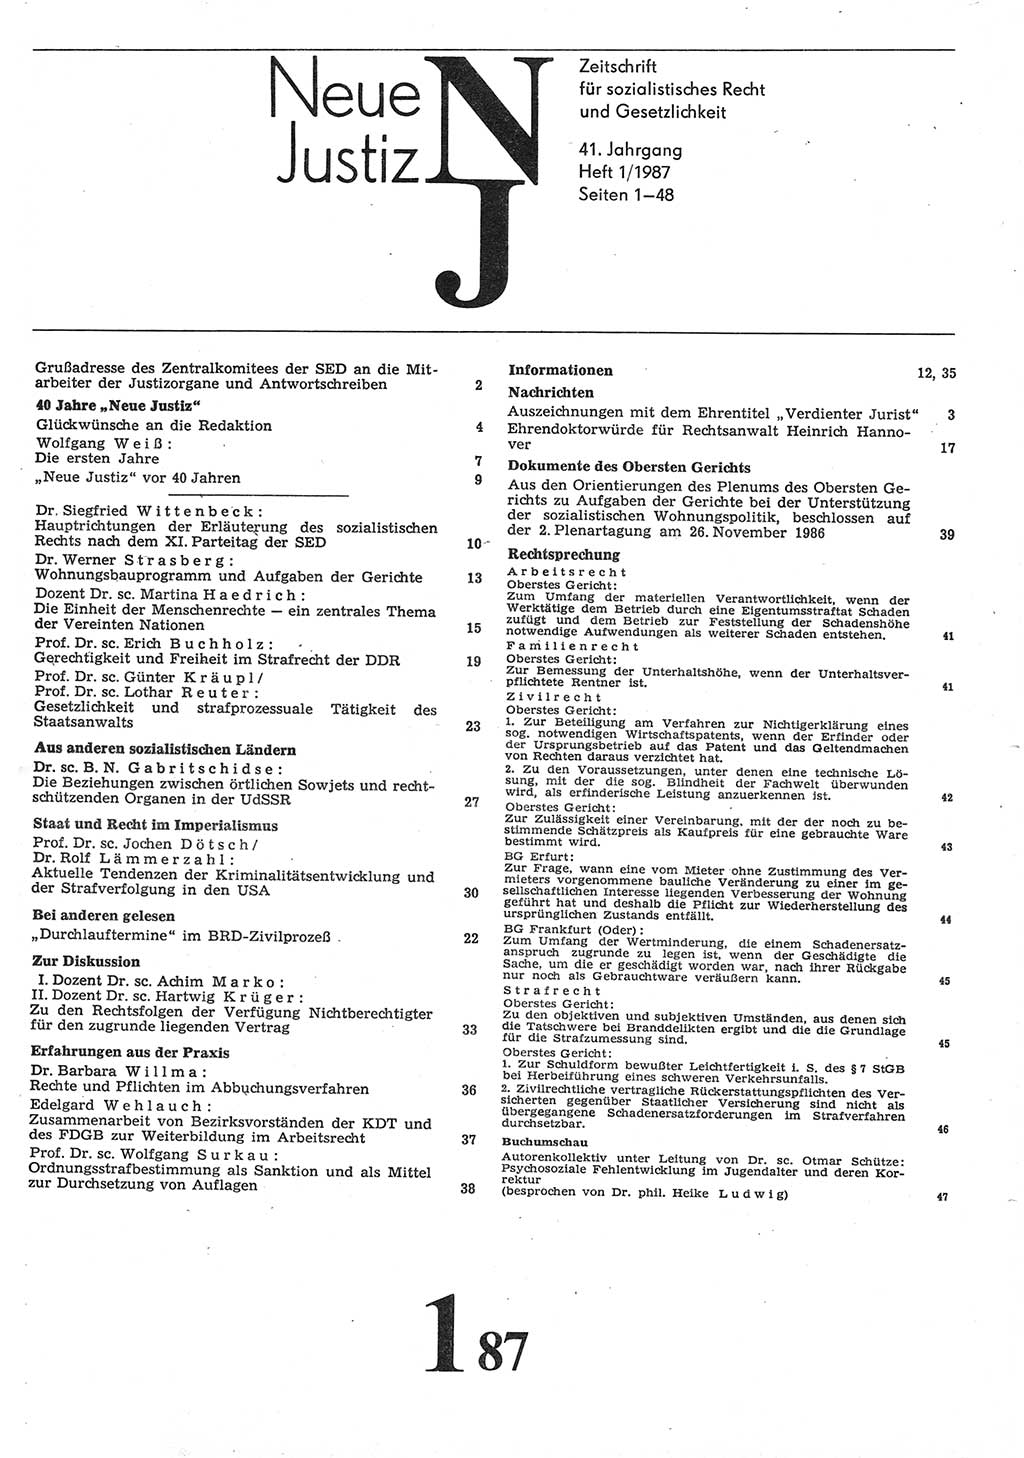 Neue Justiz (NJ), Zeitschrift für sozialistisches Recht und Gesetzlichkeit [Deutsche Demokratische Republik (DDR)], 41. Jahrgang 1987, Seite 1 (NJ DDR 1987, S. 1)